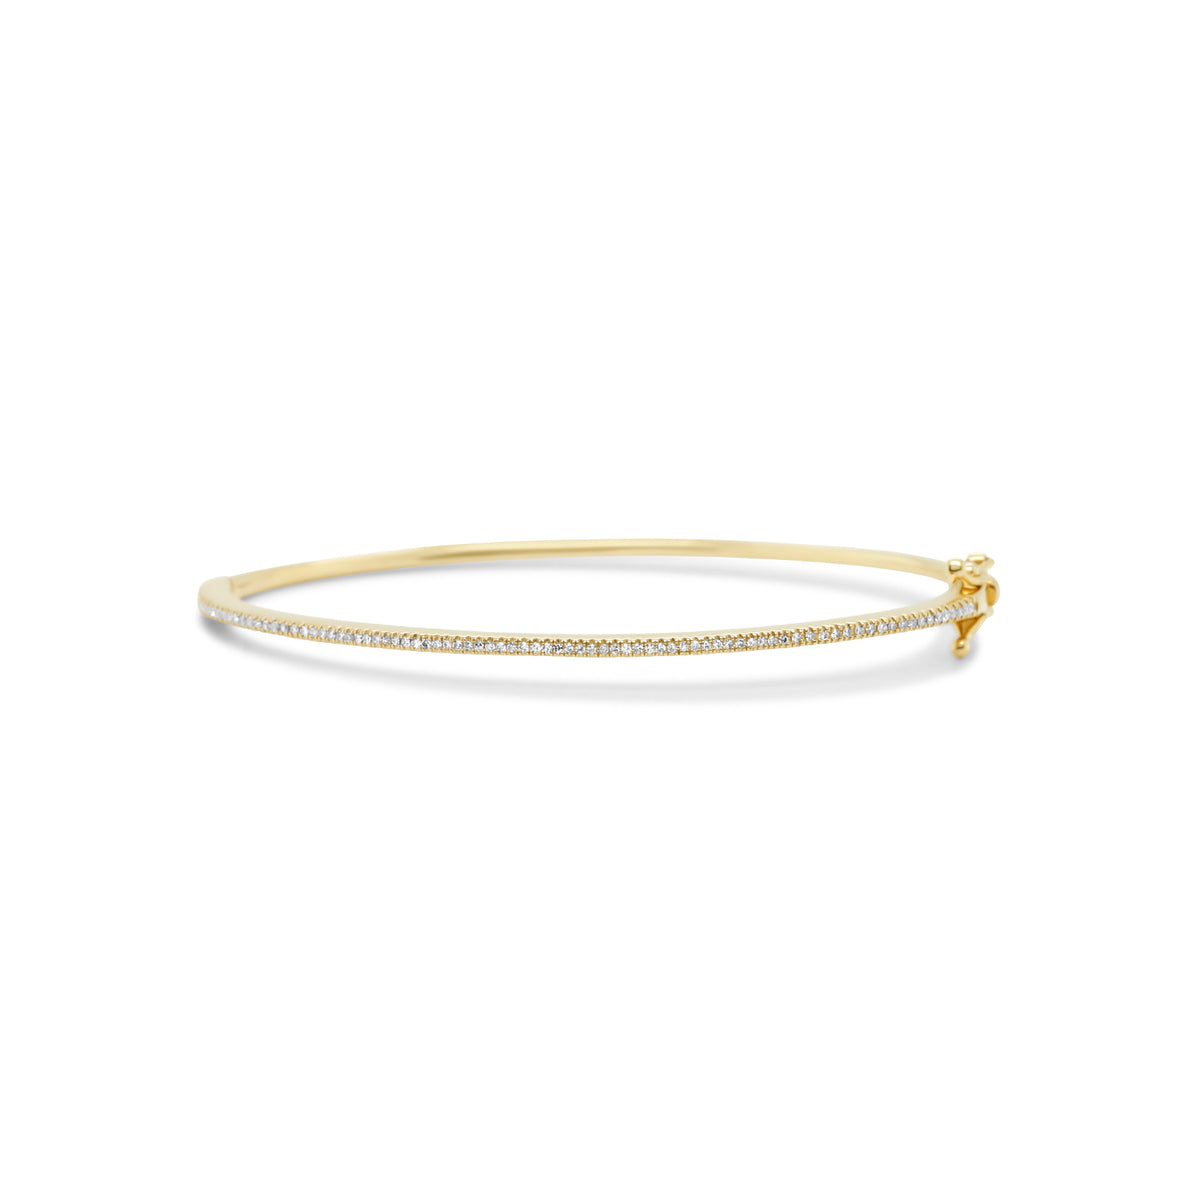 14k gold diamond bangle bracelet with clasp